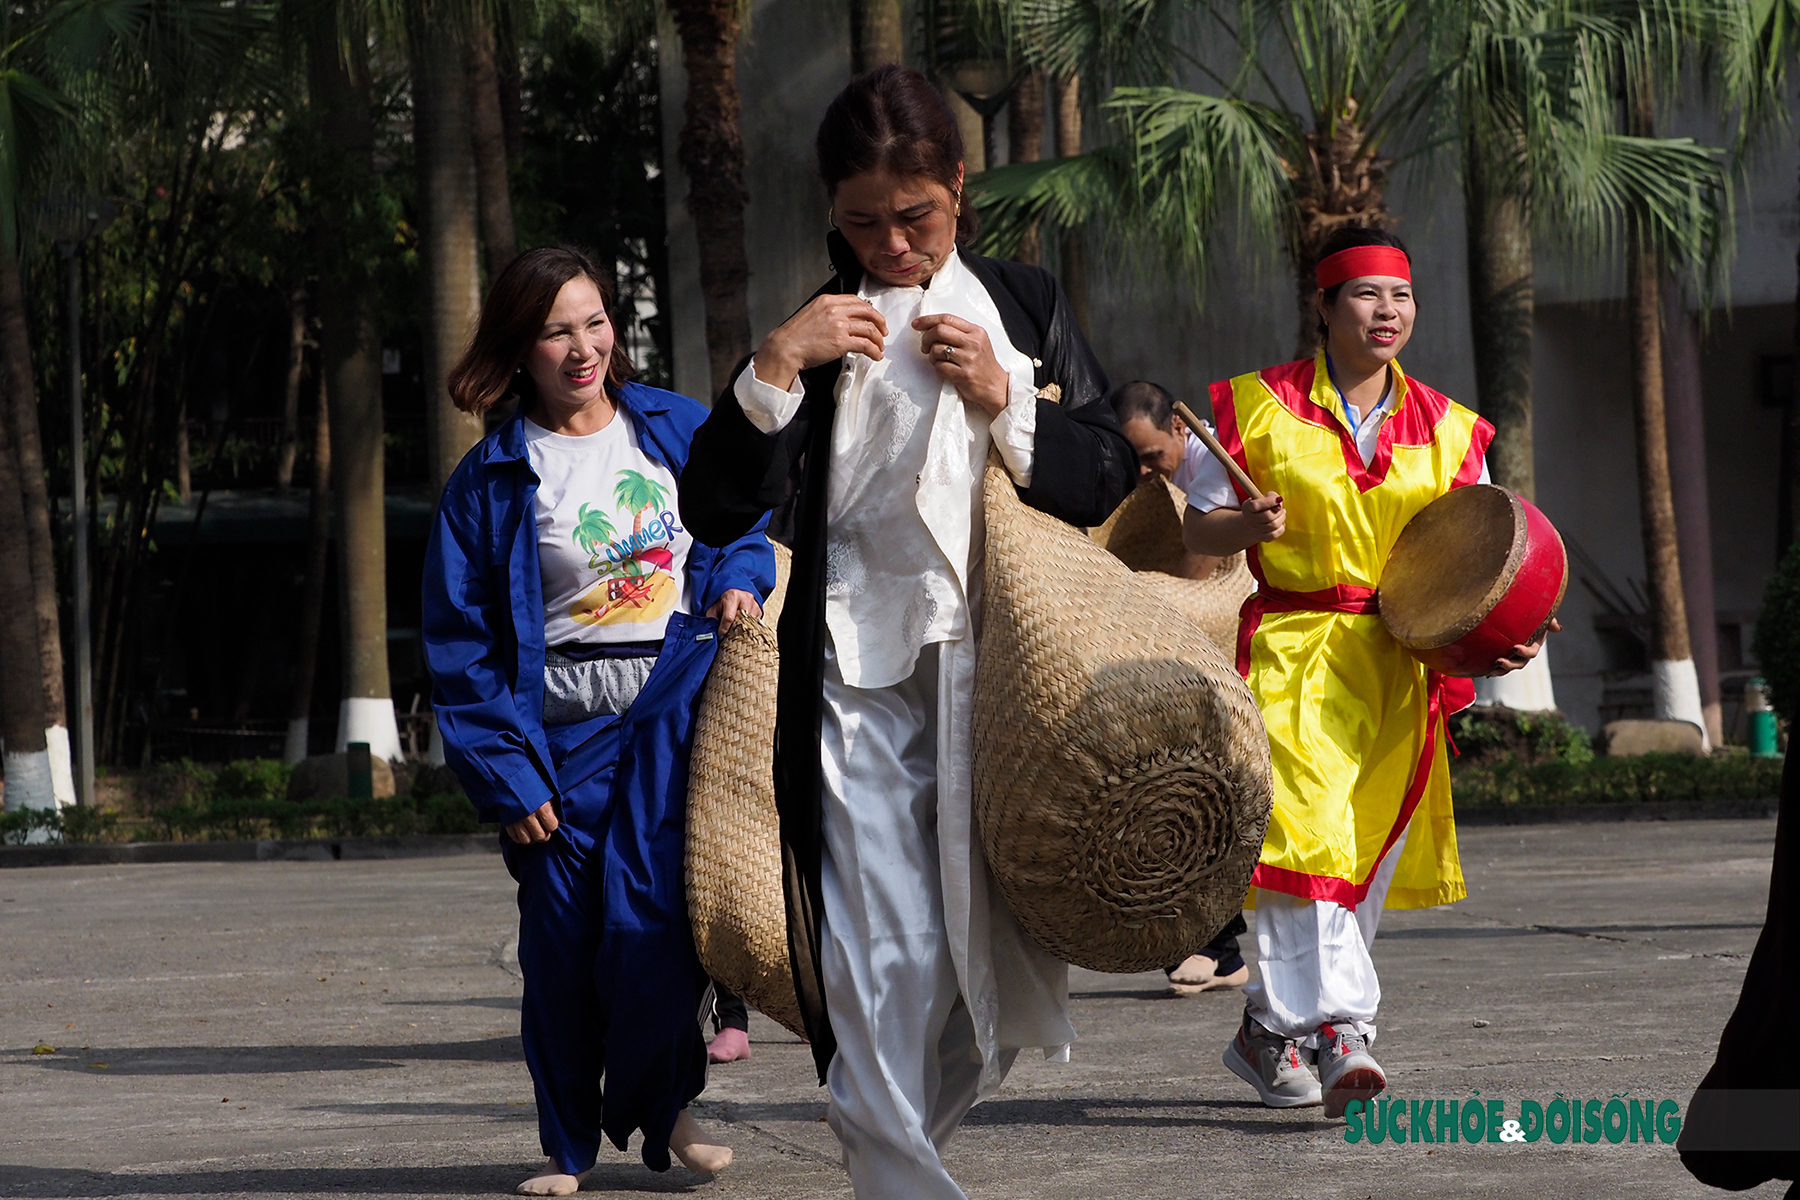 Chạy Ró làng Guột - Trò chơi dân gian đậm nét văn hóa vùng Kinh Bắc  - Ảnh 2.